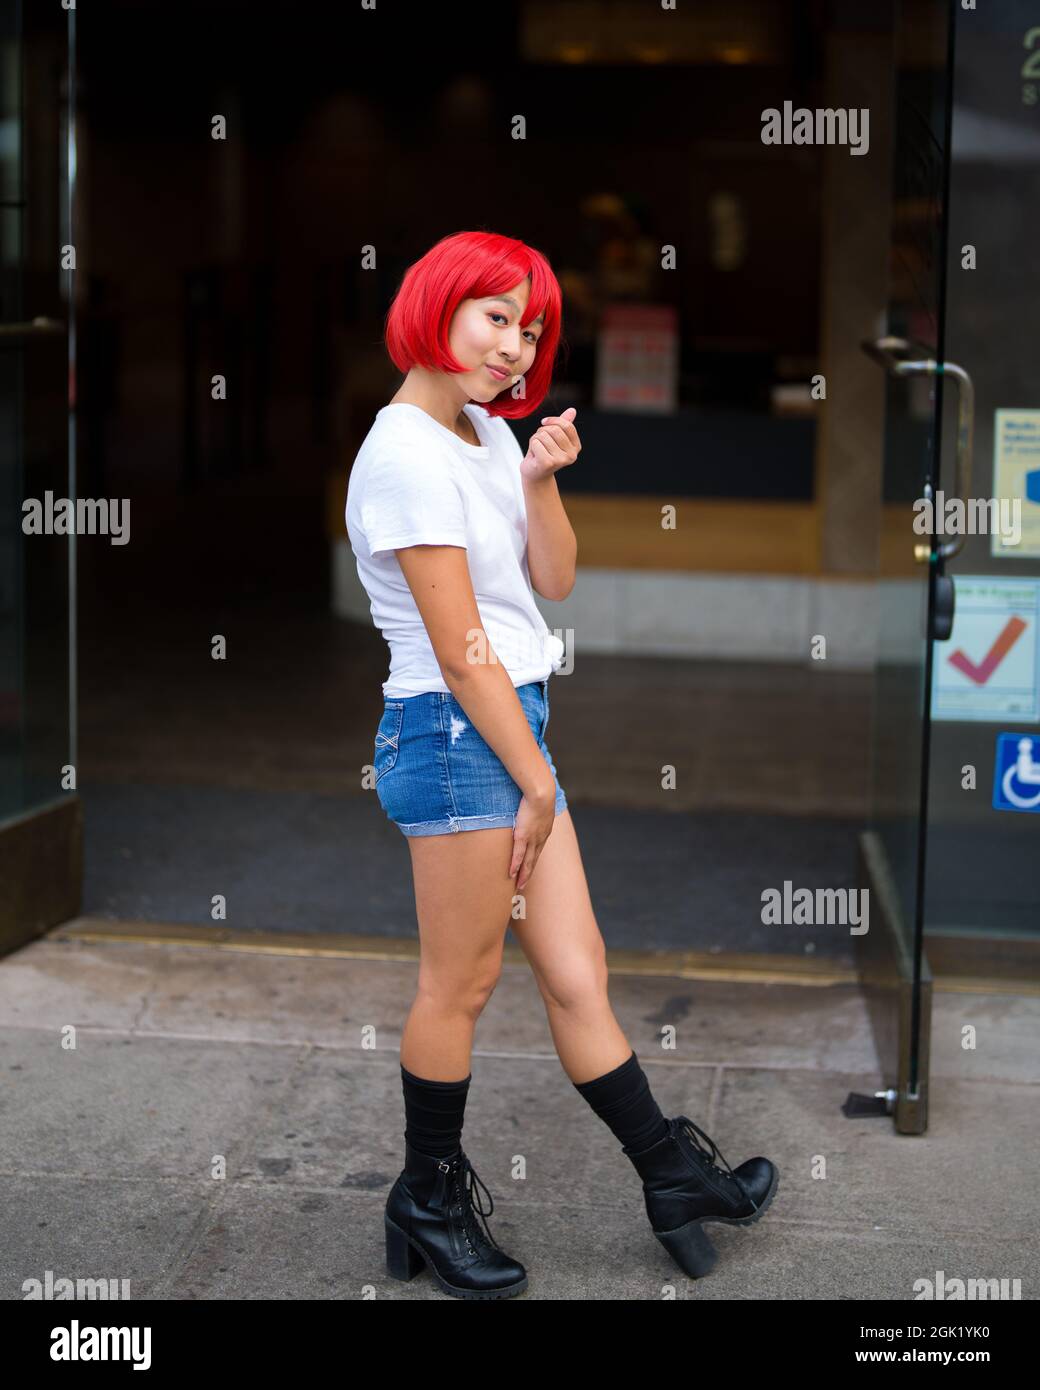 L'actrice adolescente de Cosplay asiatique devant la boutique de crèmes glacées | l'actrice de Cosplay de globules rouges devant la boutique Banque D'Images